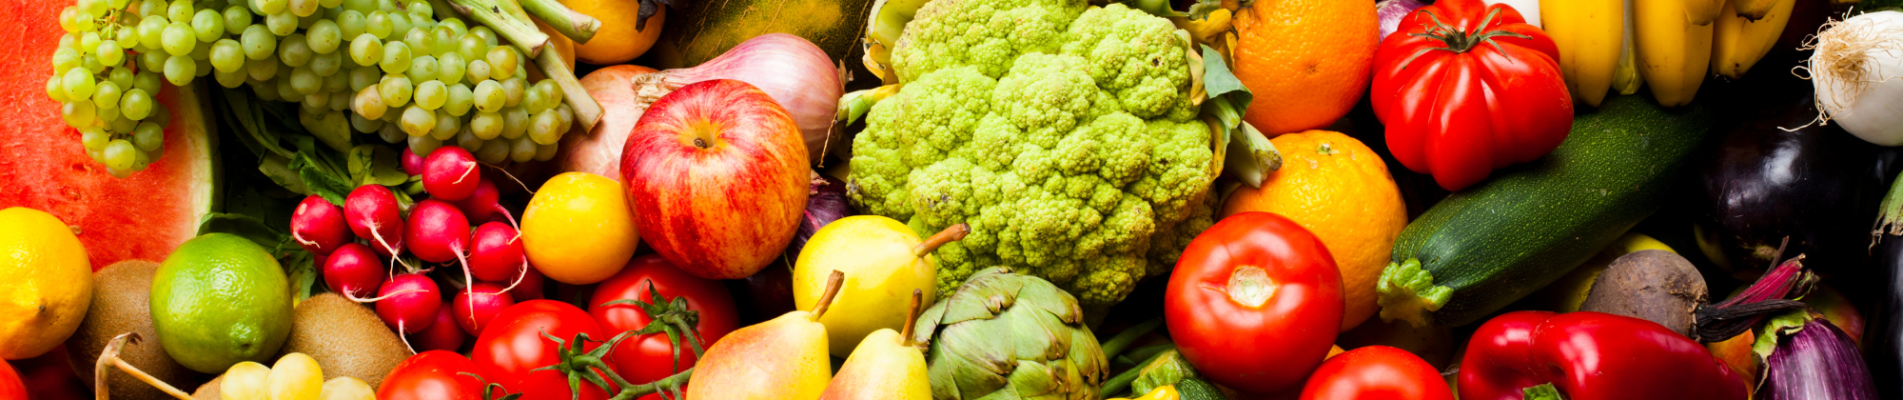 Emballage fruits & légumes